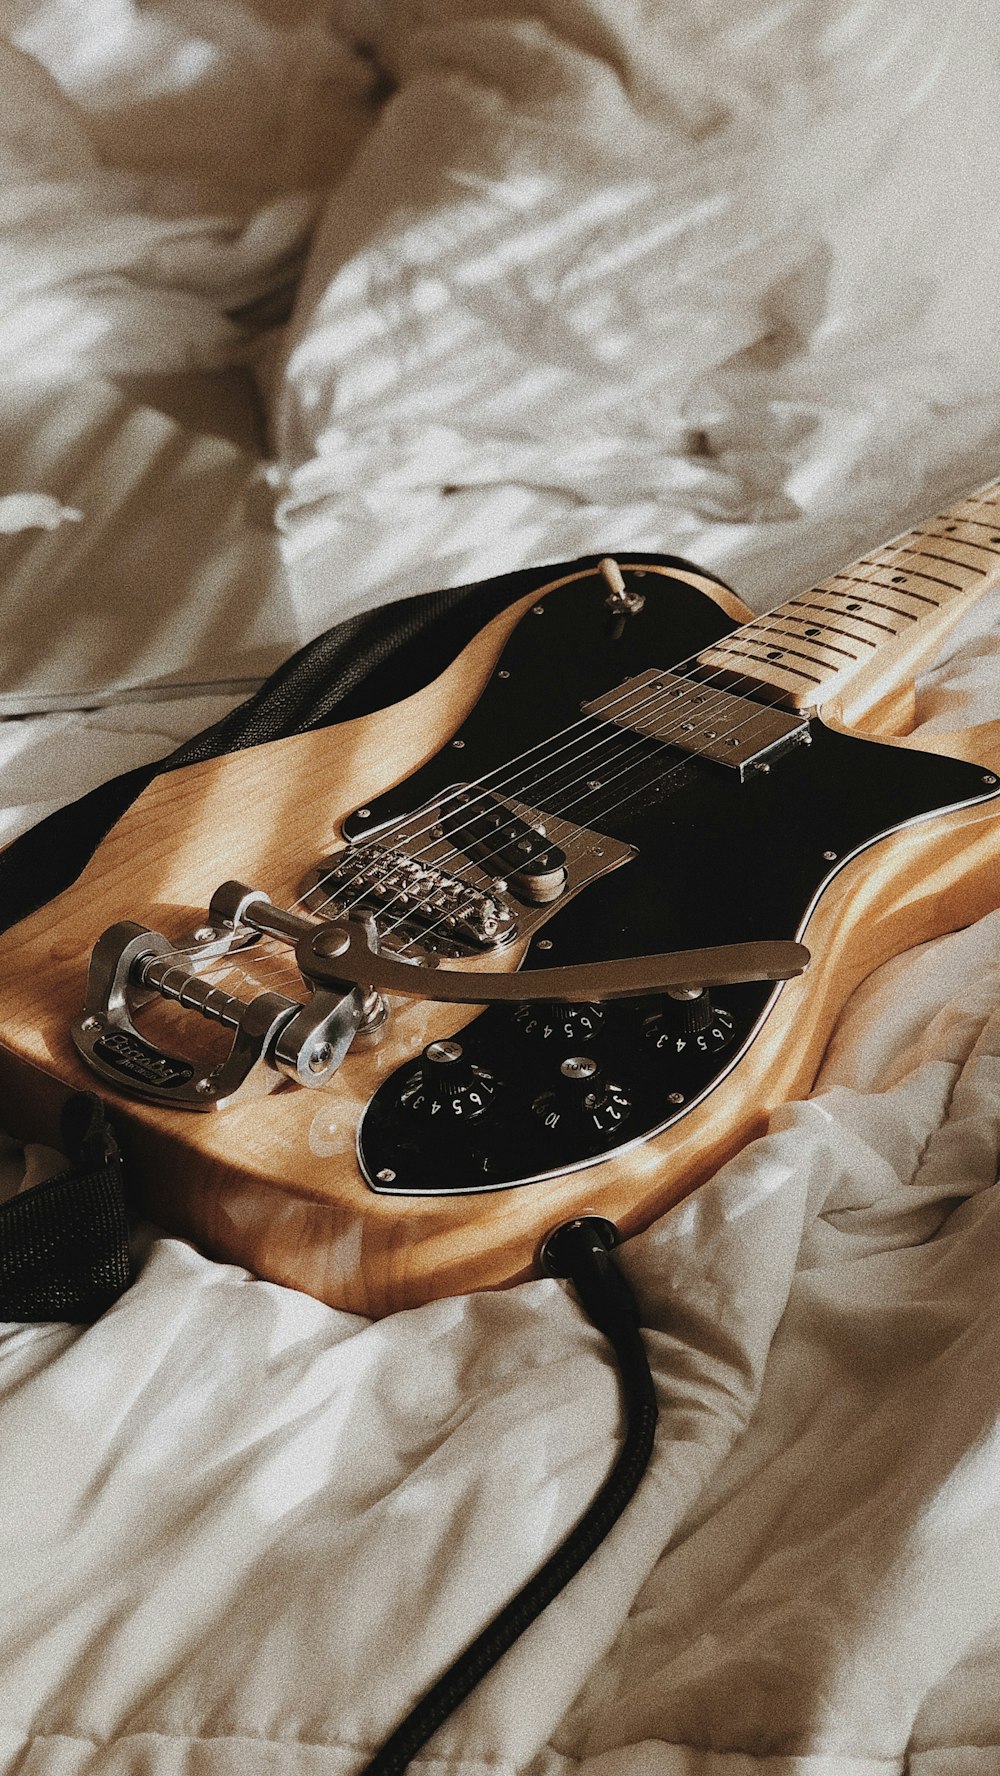 Eine E-Gitarre liegt auf einem Bett